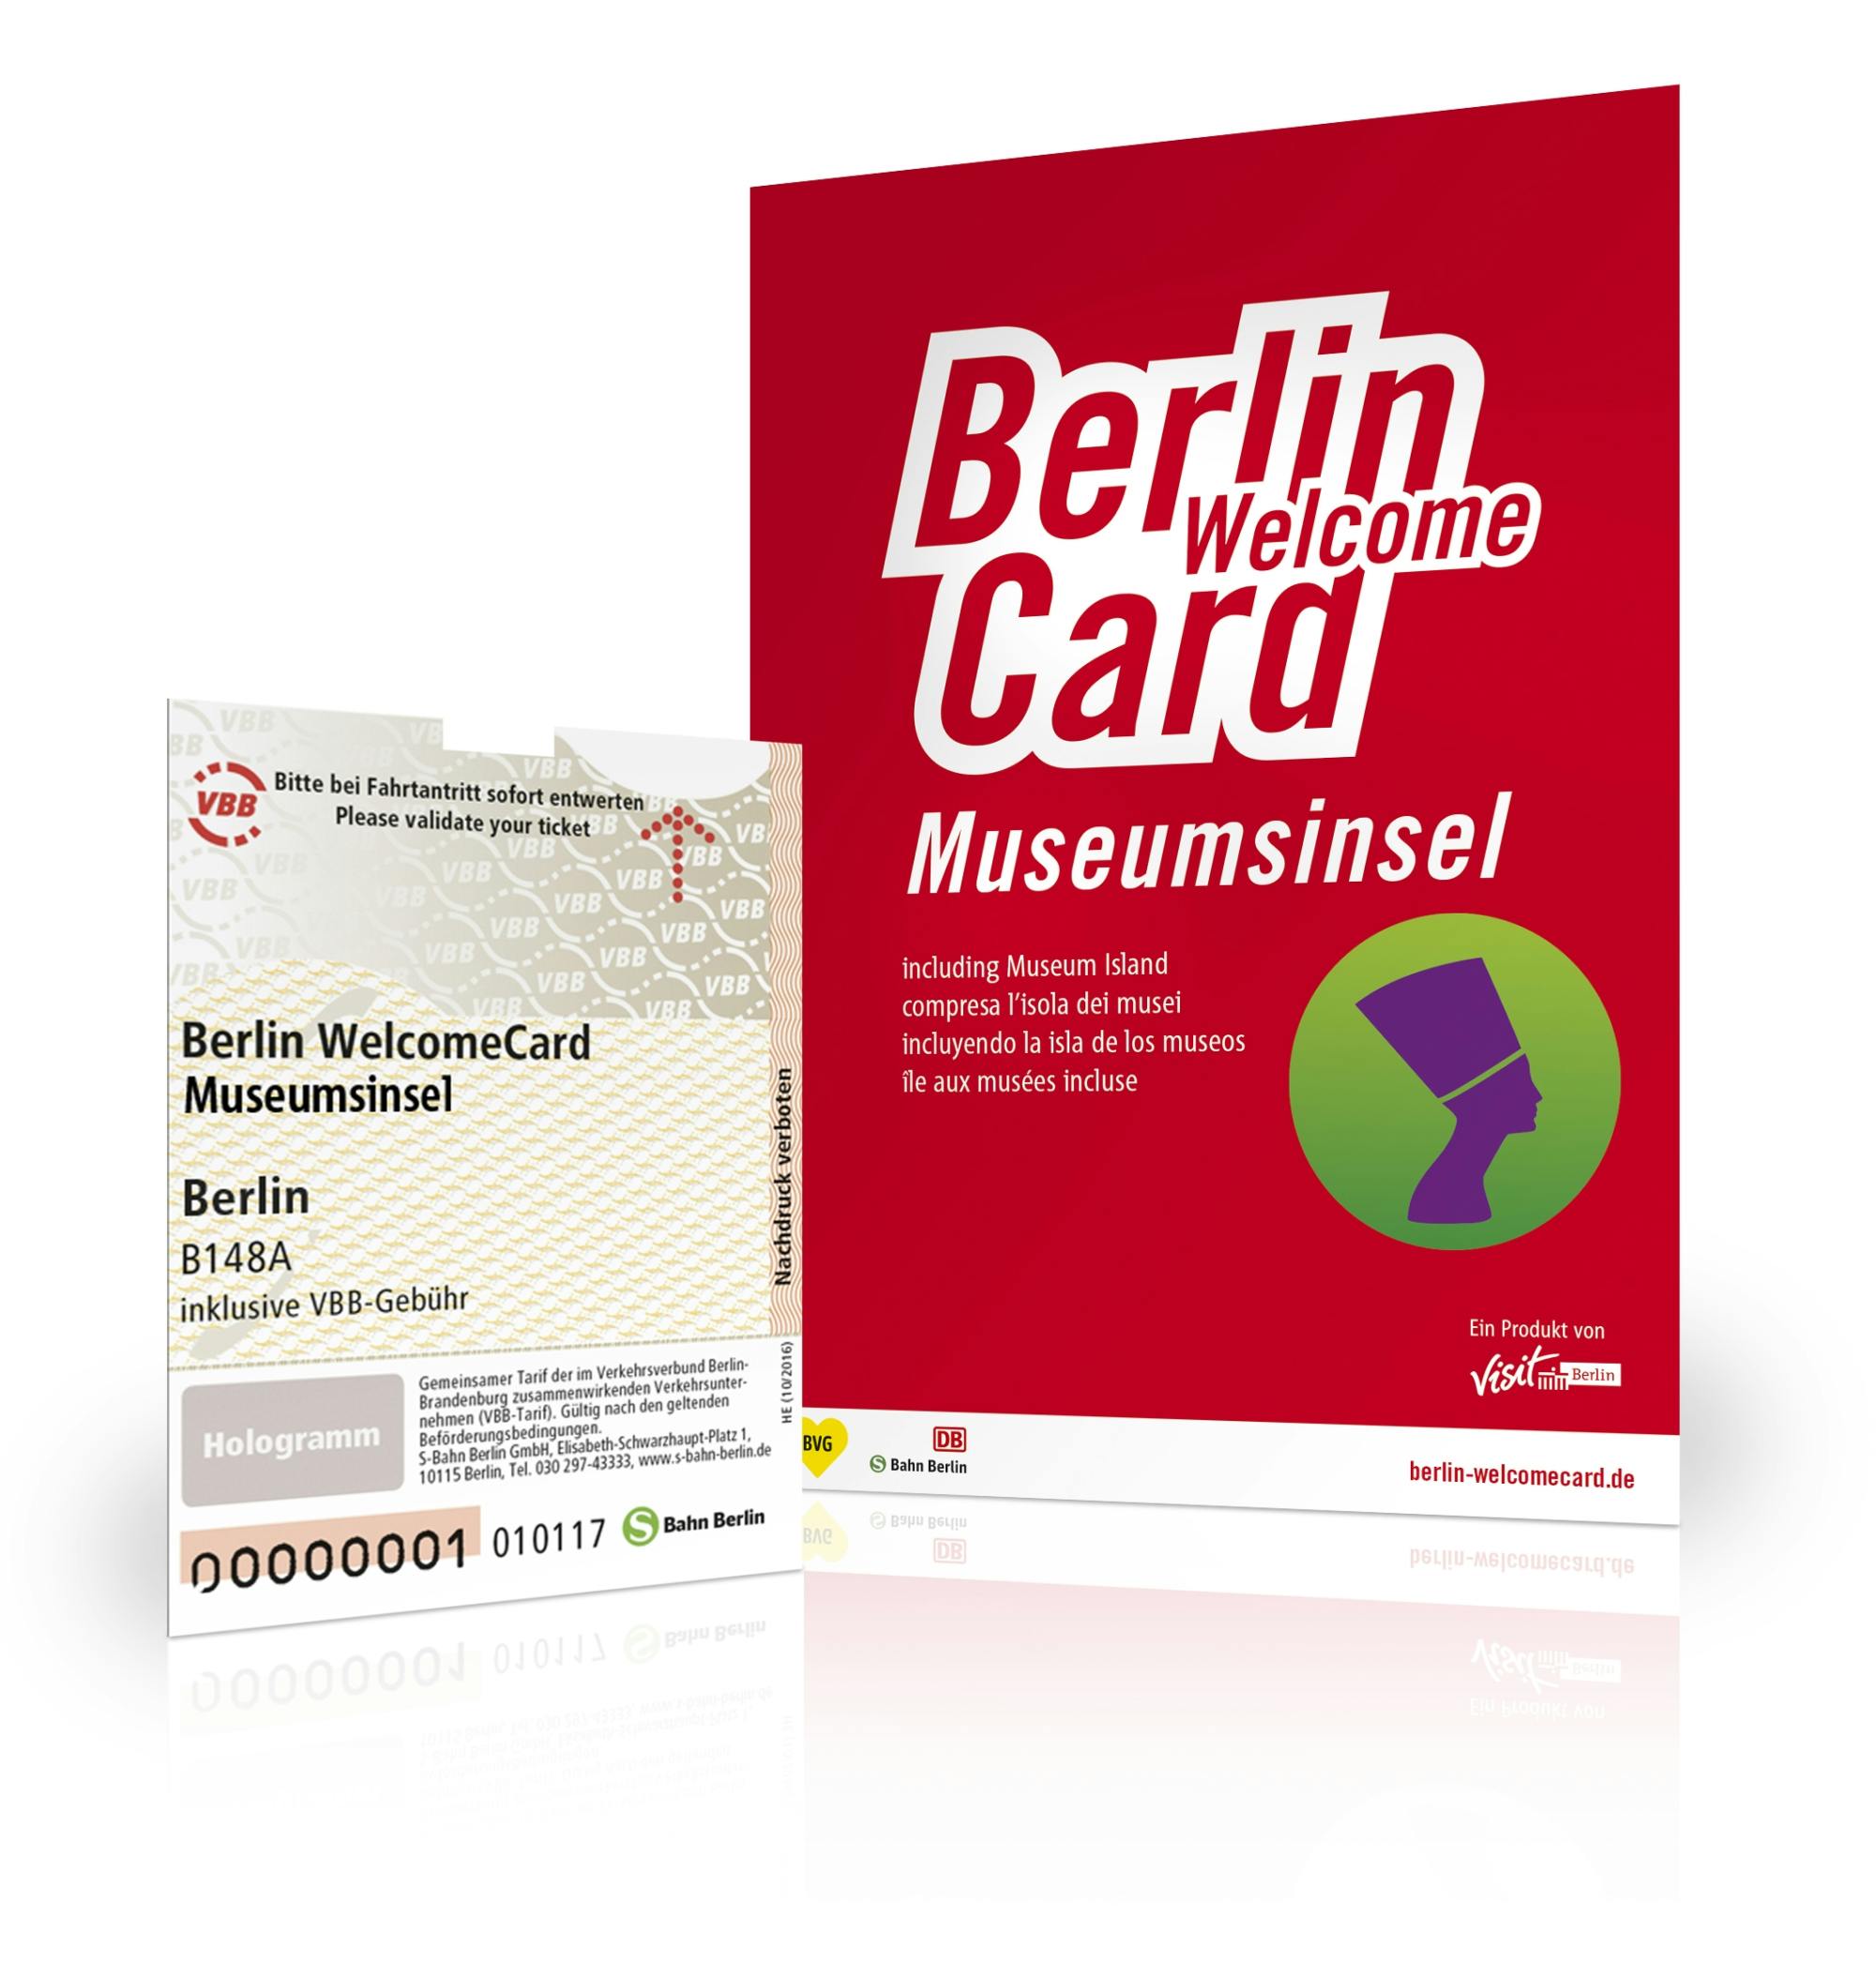 Berlin WelcomeCard ze wstępem na Wyspę Muzeów